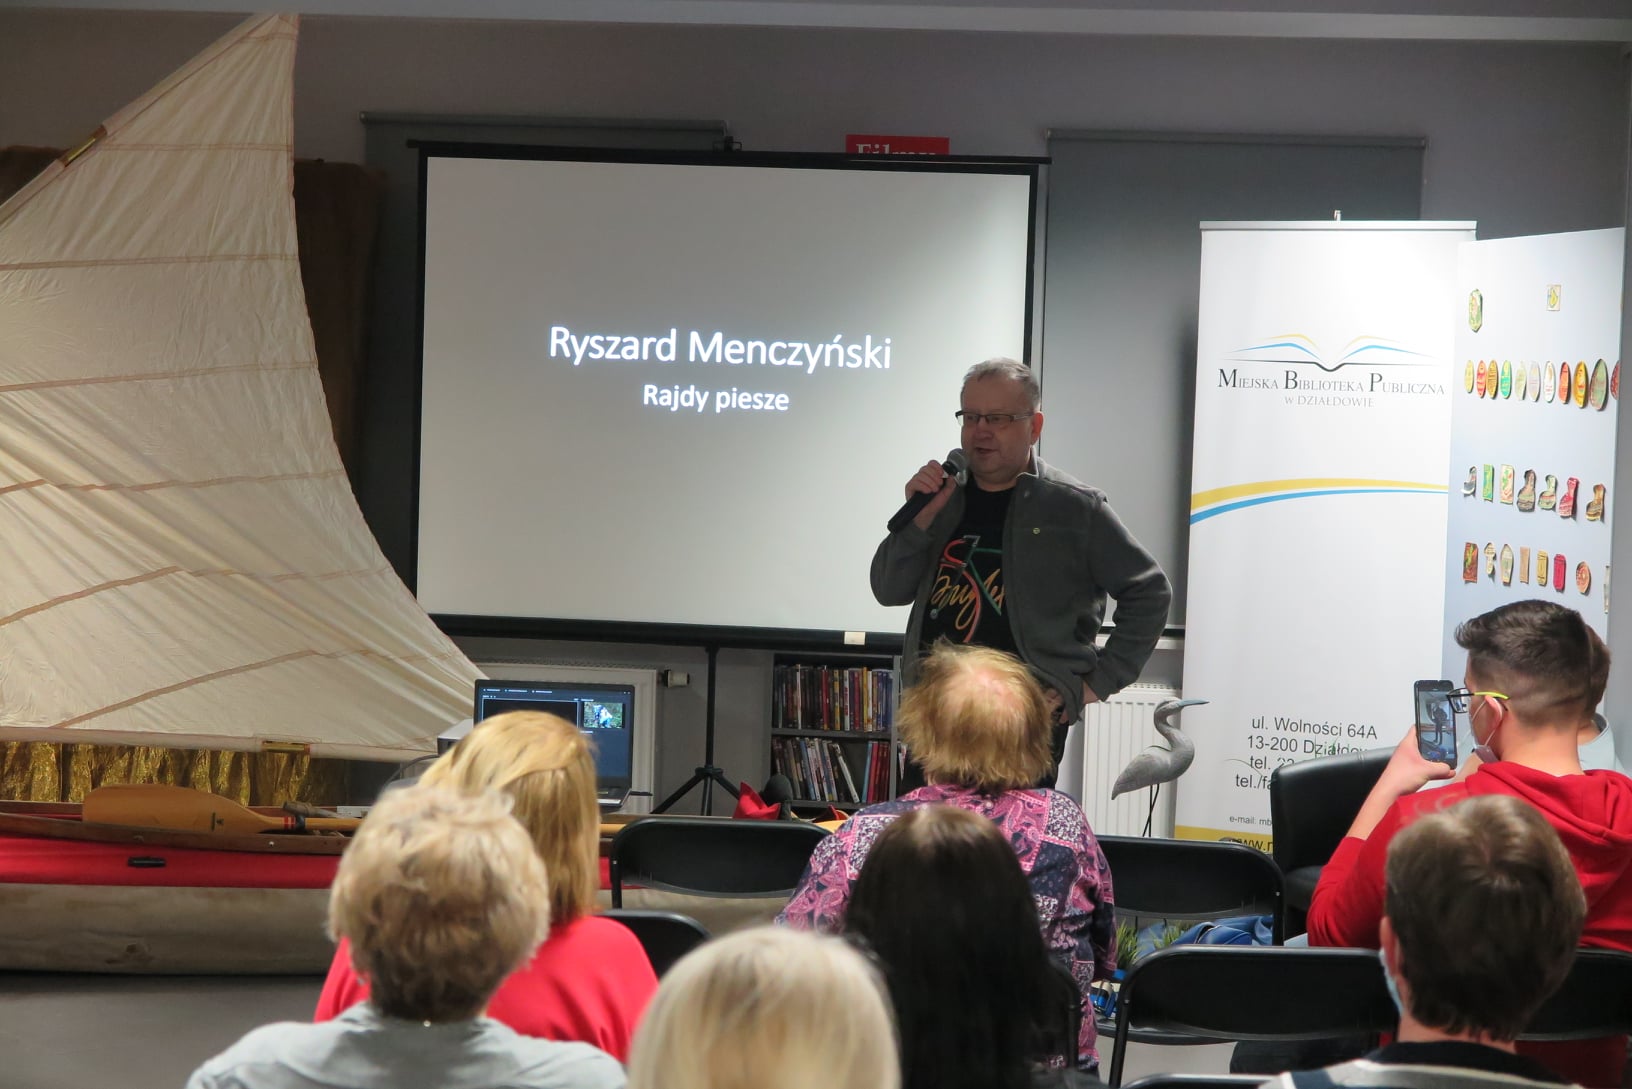 Ryszard Menczyński stoi z mikrofonem , w tle składany kajak z postawionym żaglem i ekran projektora, z przodu widać głowy publiczności